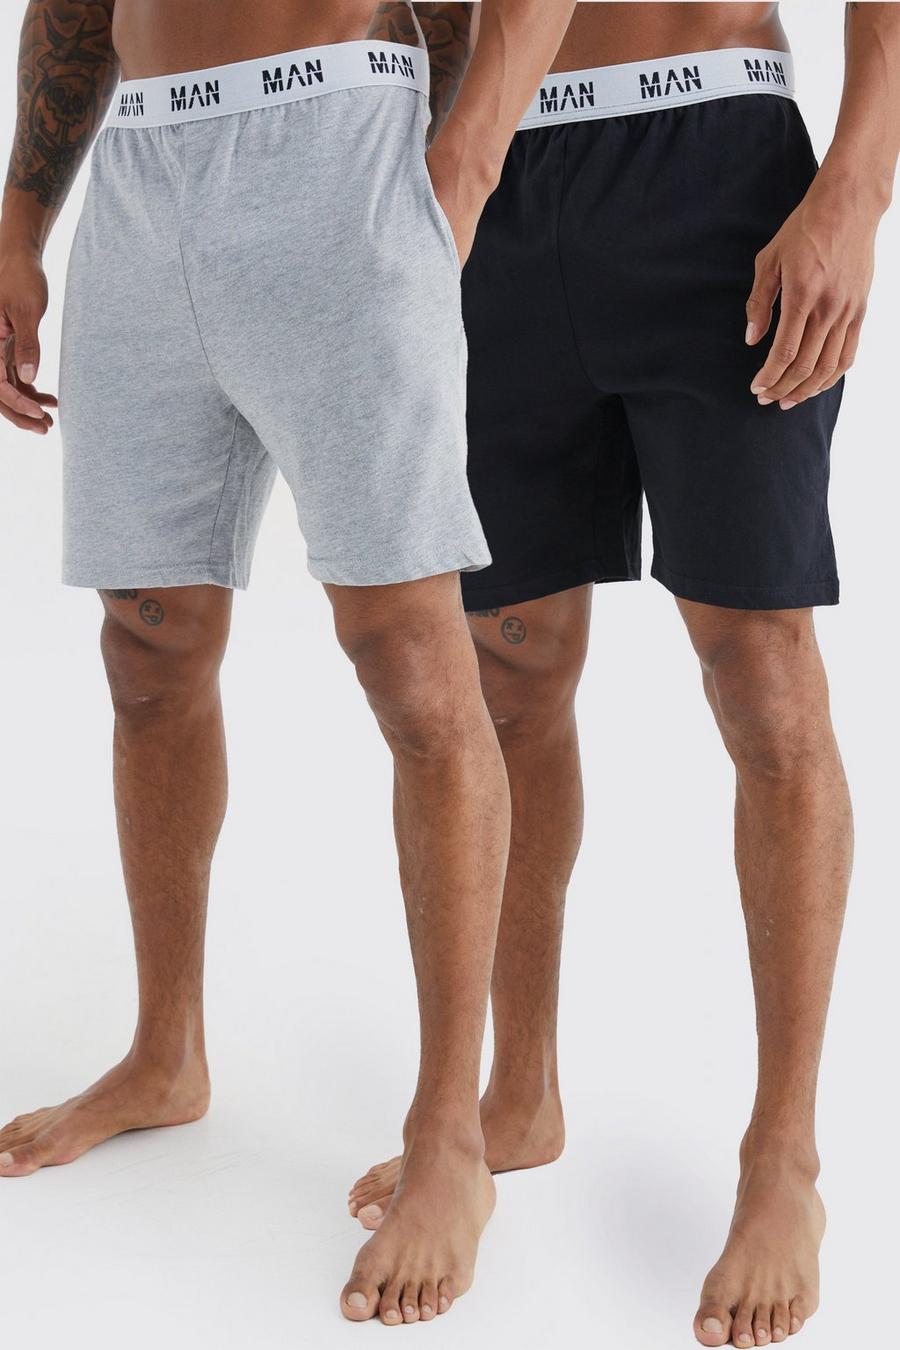 Lot de 2 shorts confort - MAN, Multi mehrfarbig